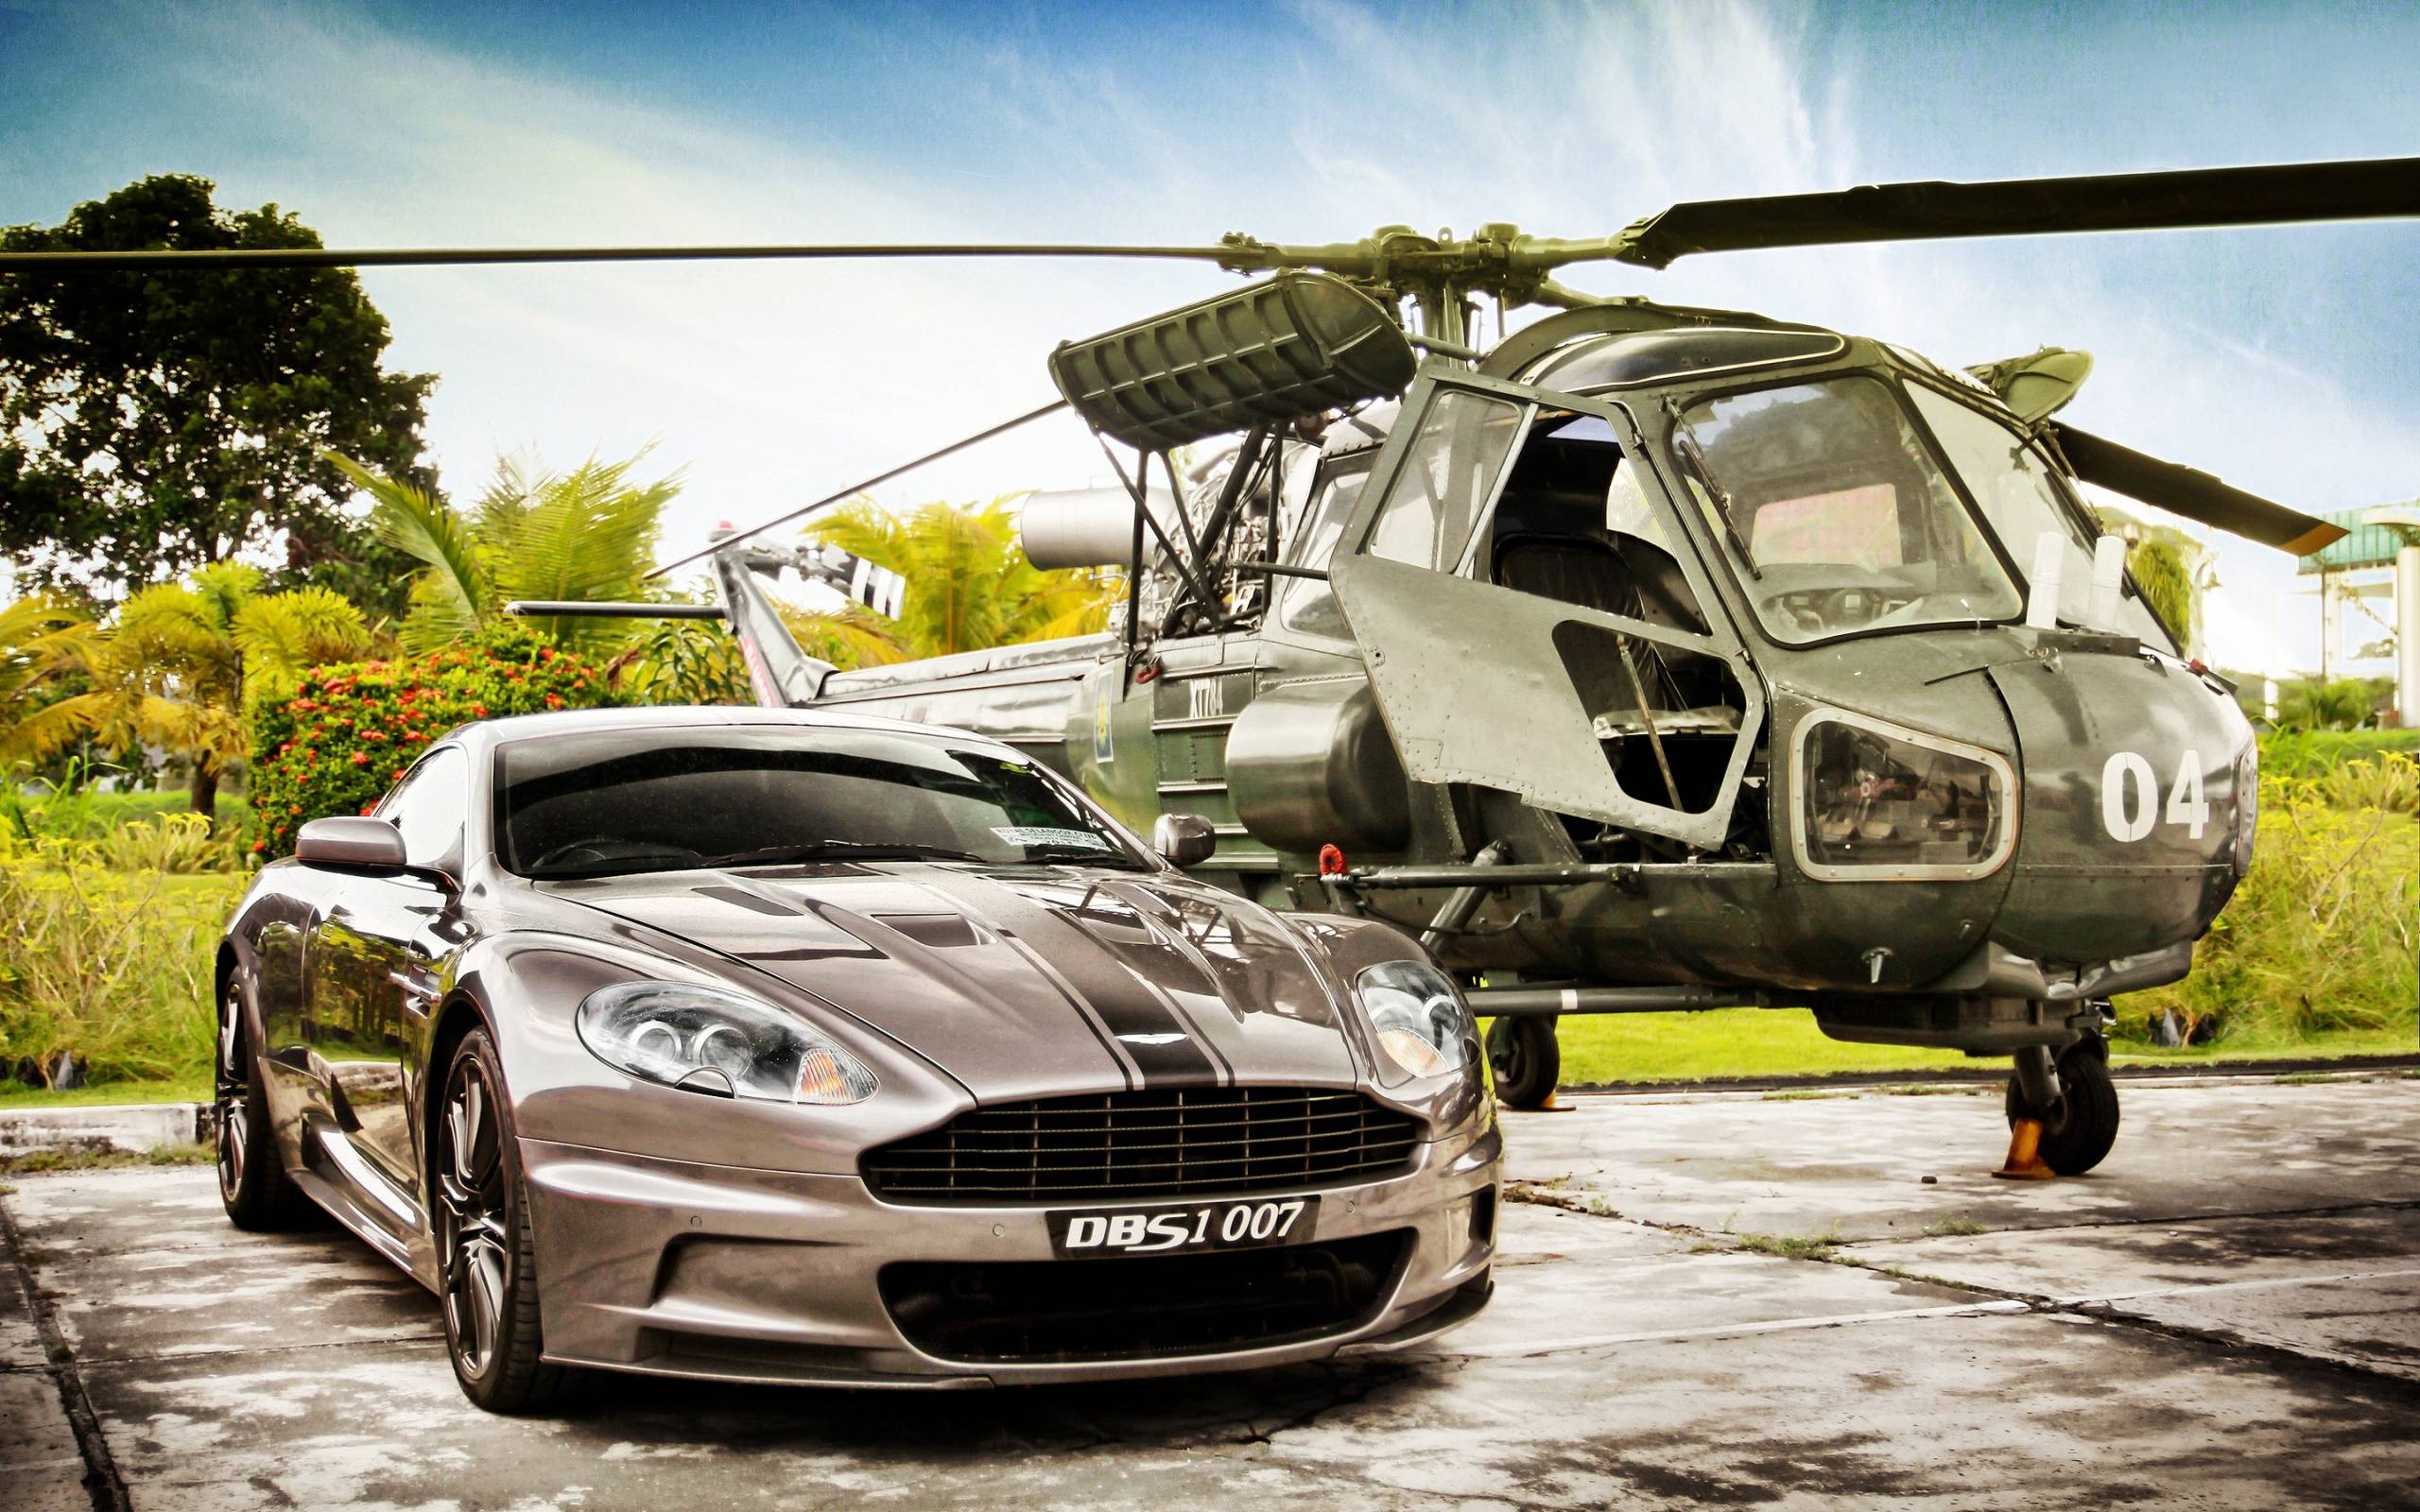 James Bond Skyfall Aston Martin DBS1 007 widescreen wallpaper. Wide